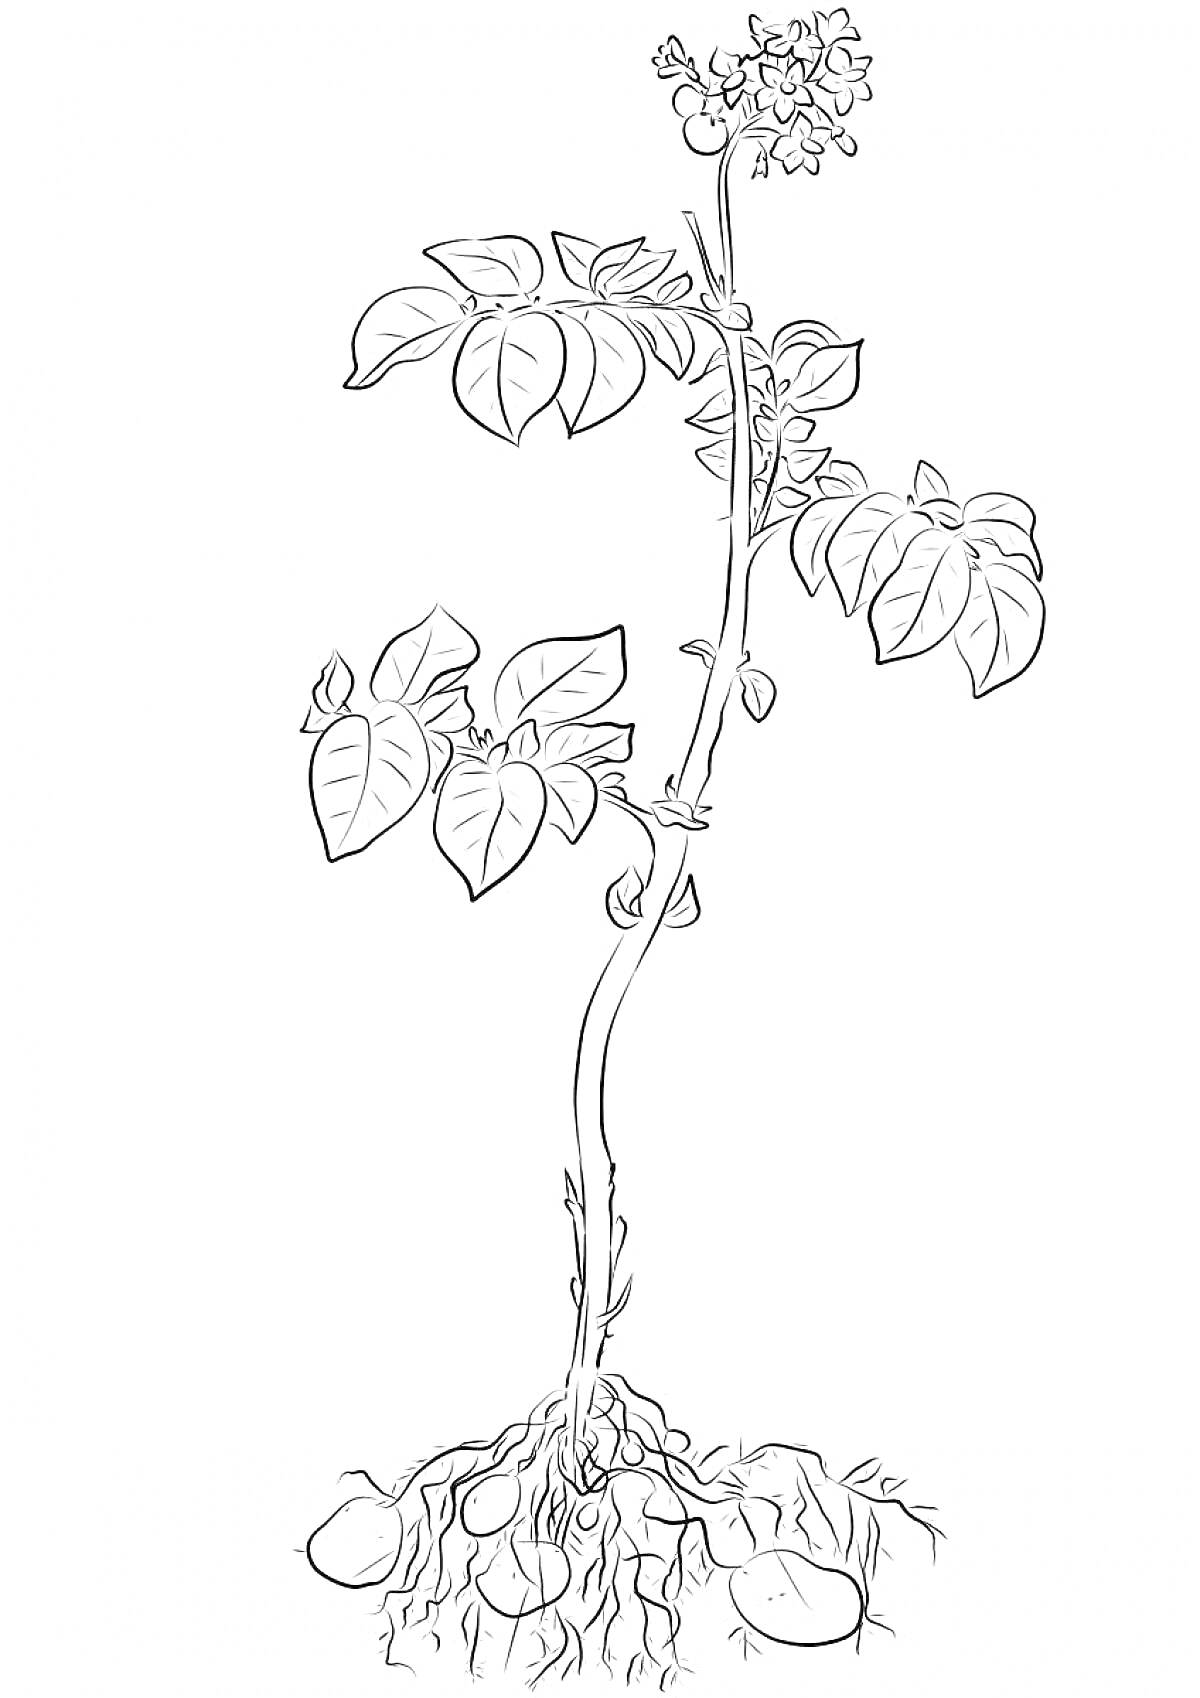 Растение картофеля с цветами, листьями и корнями с клубнями